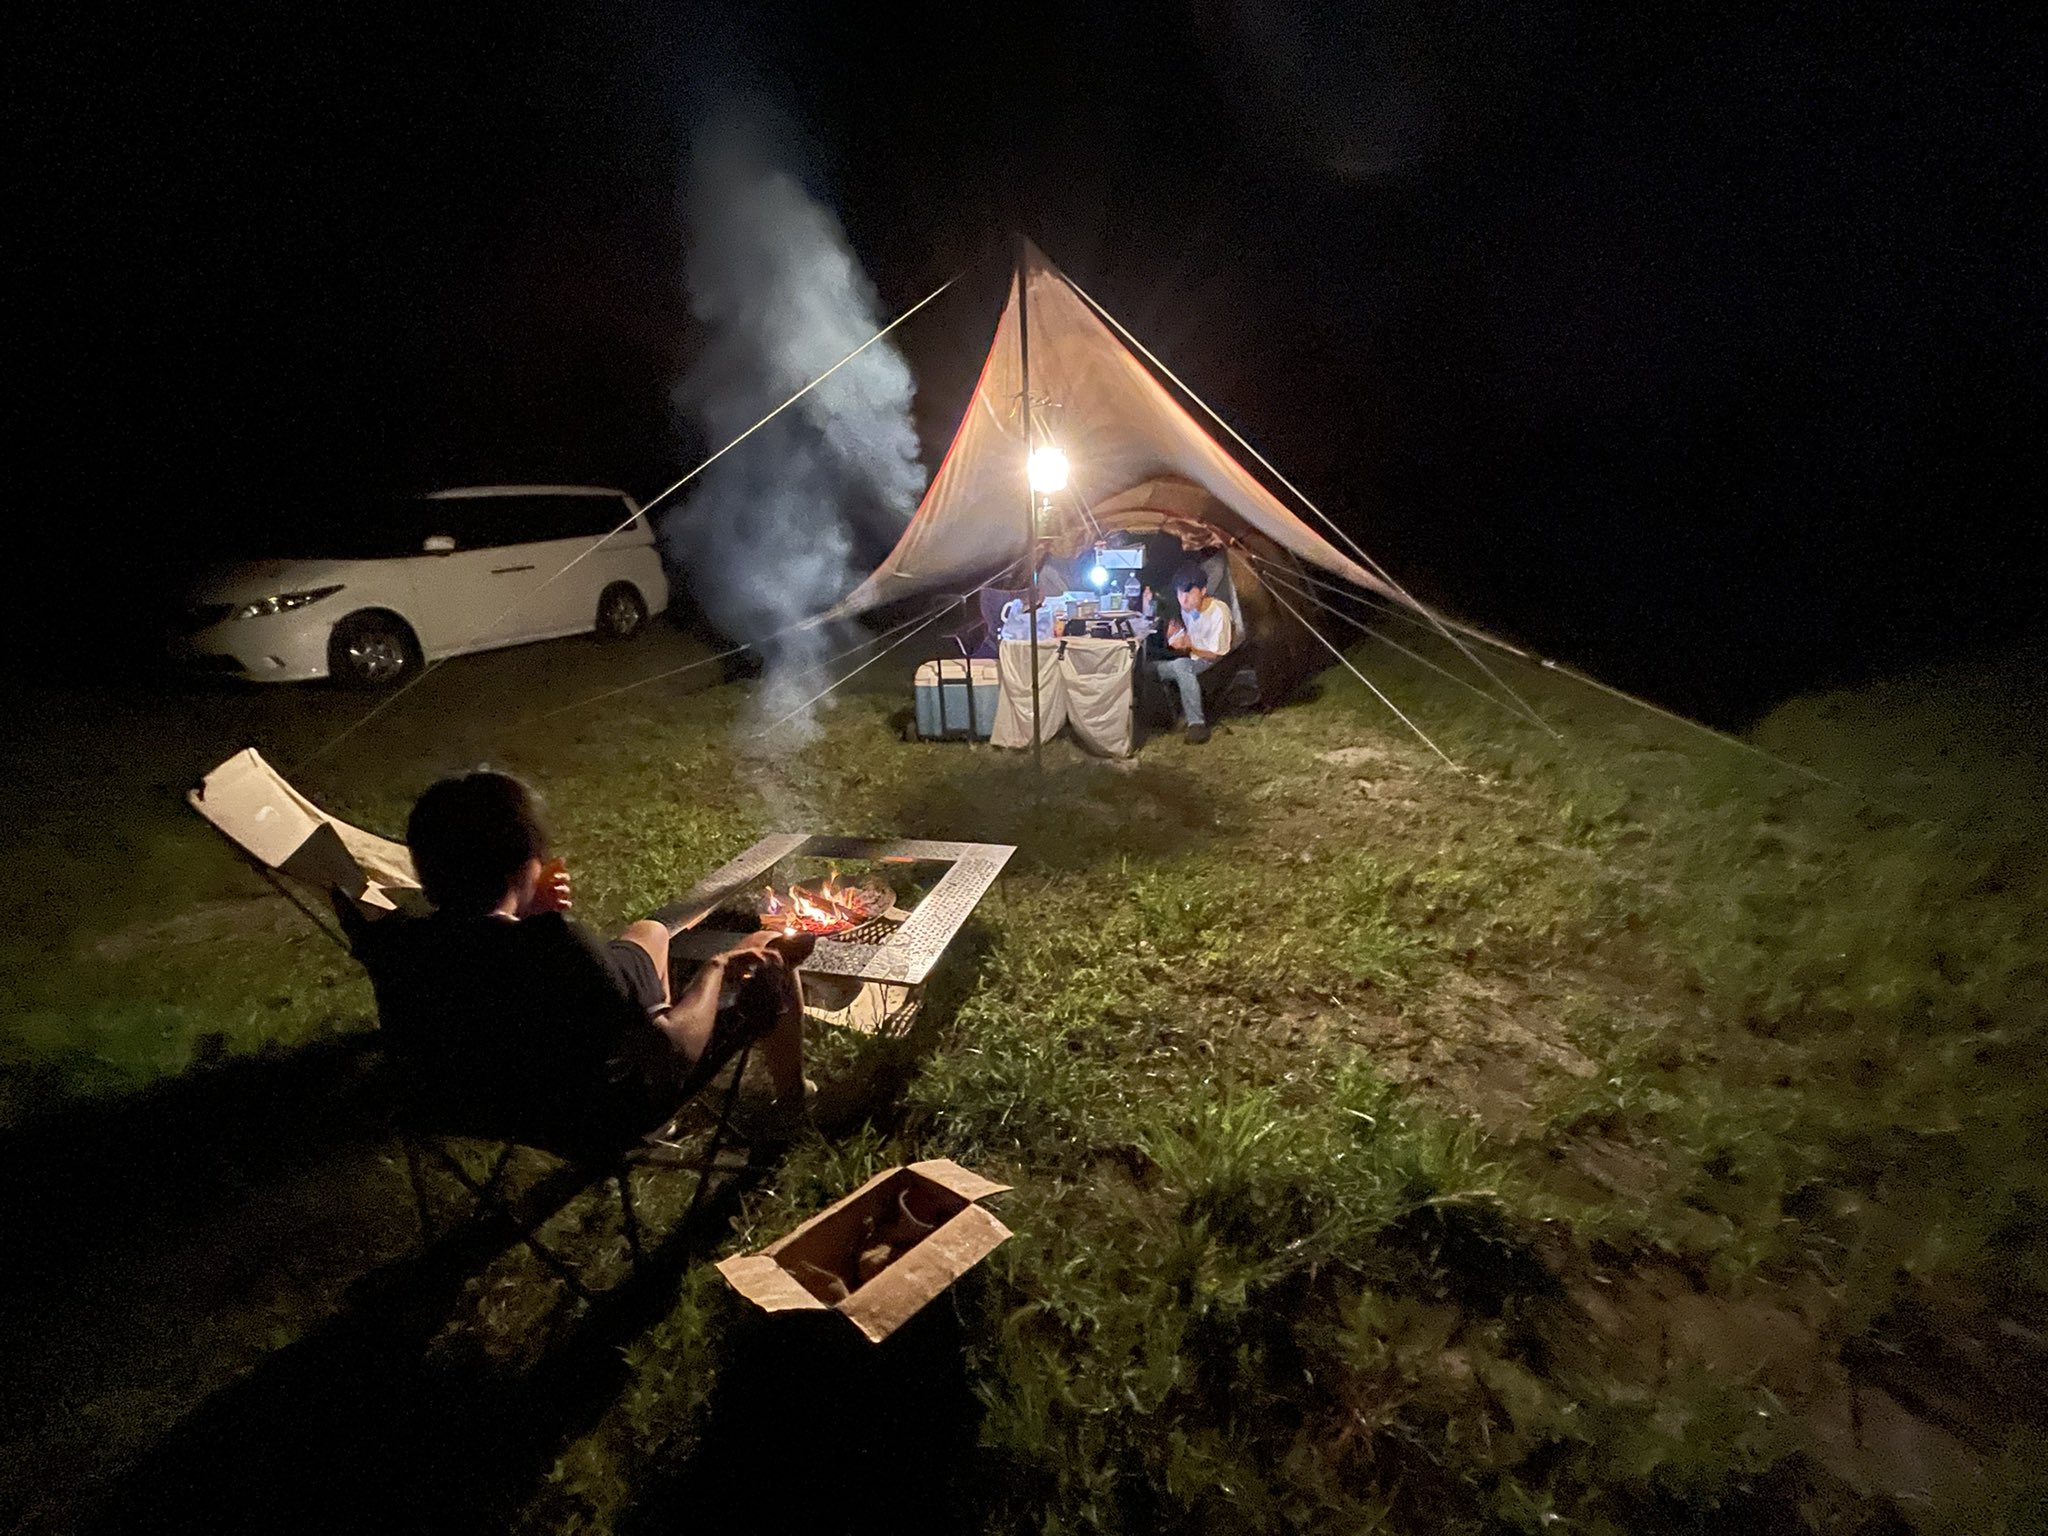 りょう 8月の12 13 14で2泊3日キャンプ行ってまいりました 今回お邪魔させて頂いたキャンプ場 は Campchiba 満天の森 とゆうキャンプ場にお邪魔させて頂きました とても楽しい2泊3日を過ごせました キャンプ キャンプ好きと繋がりたい Dod